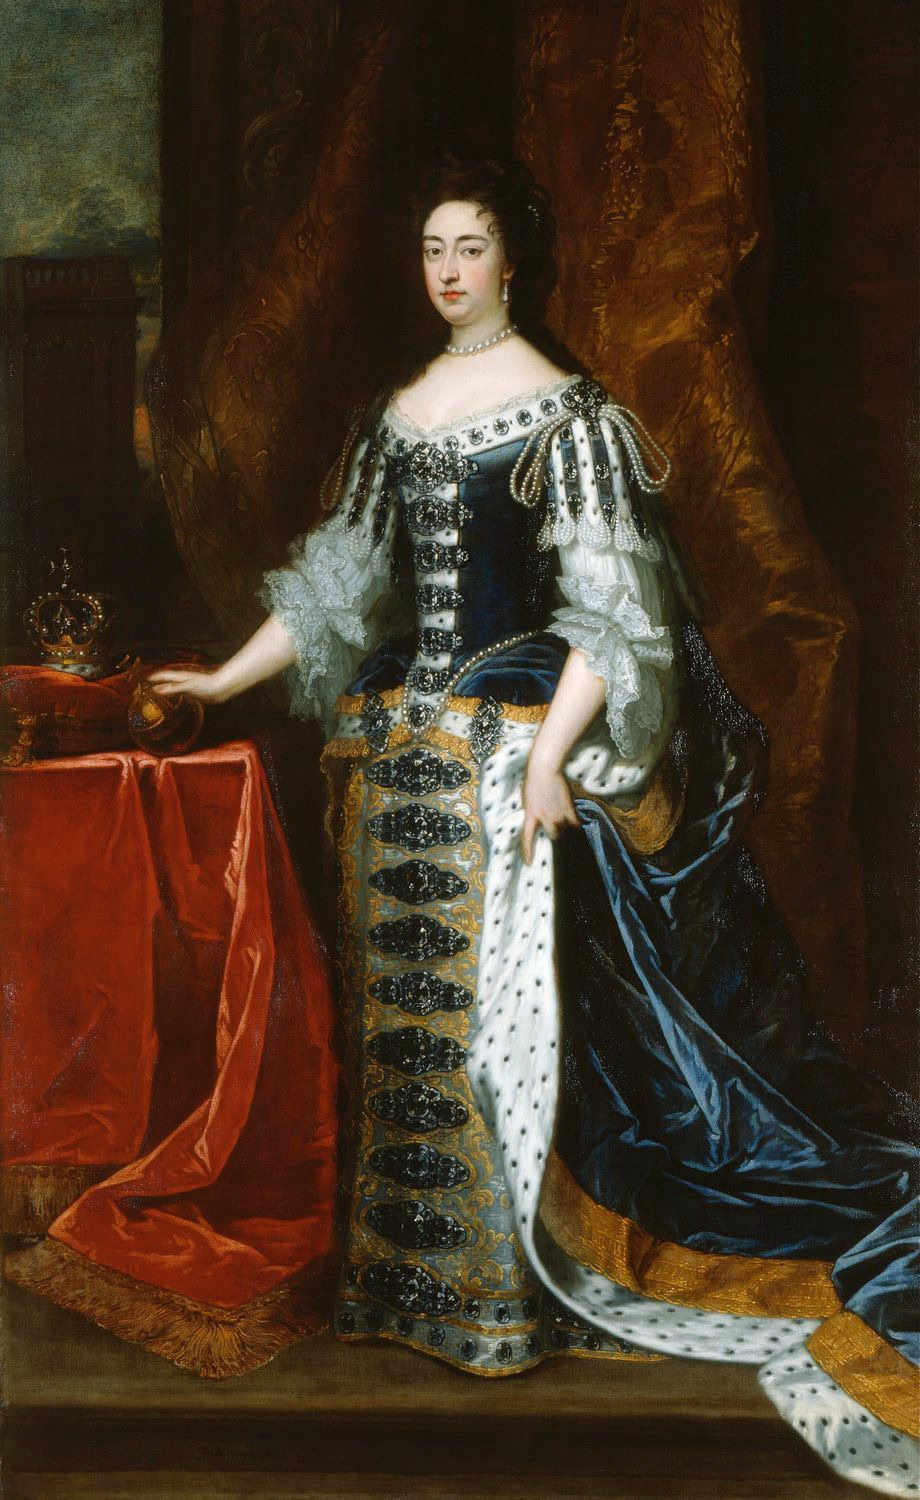 Queen Mary II by Godfrey Kneller (1690)